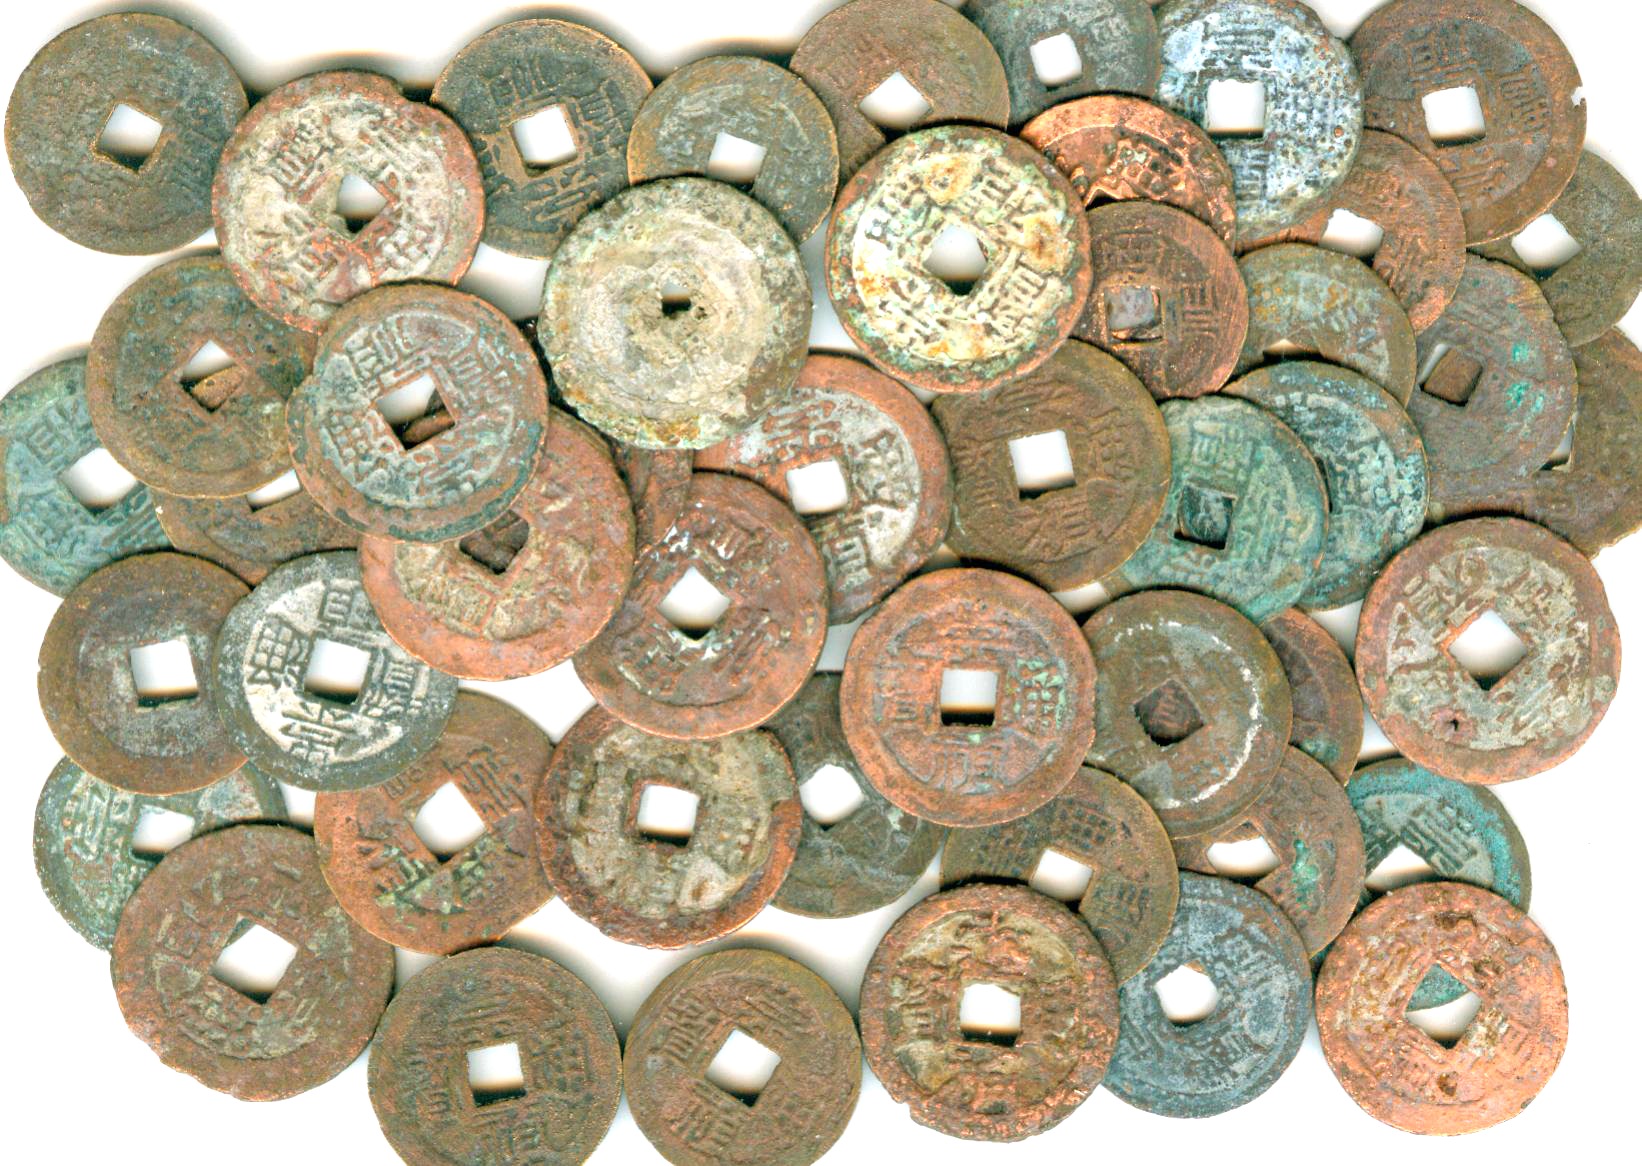 K3650, Chong-Zhen Tong-Bao Coins, 20 Pcs Wholesle, China AD 1630's